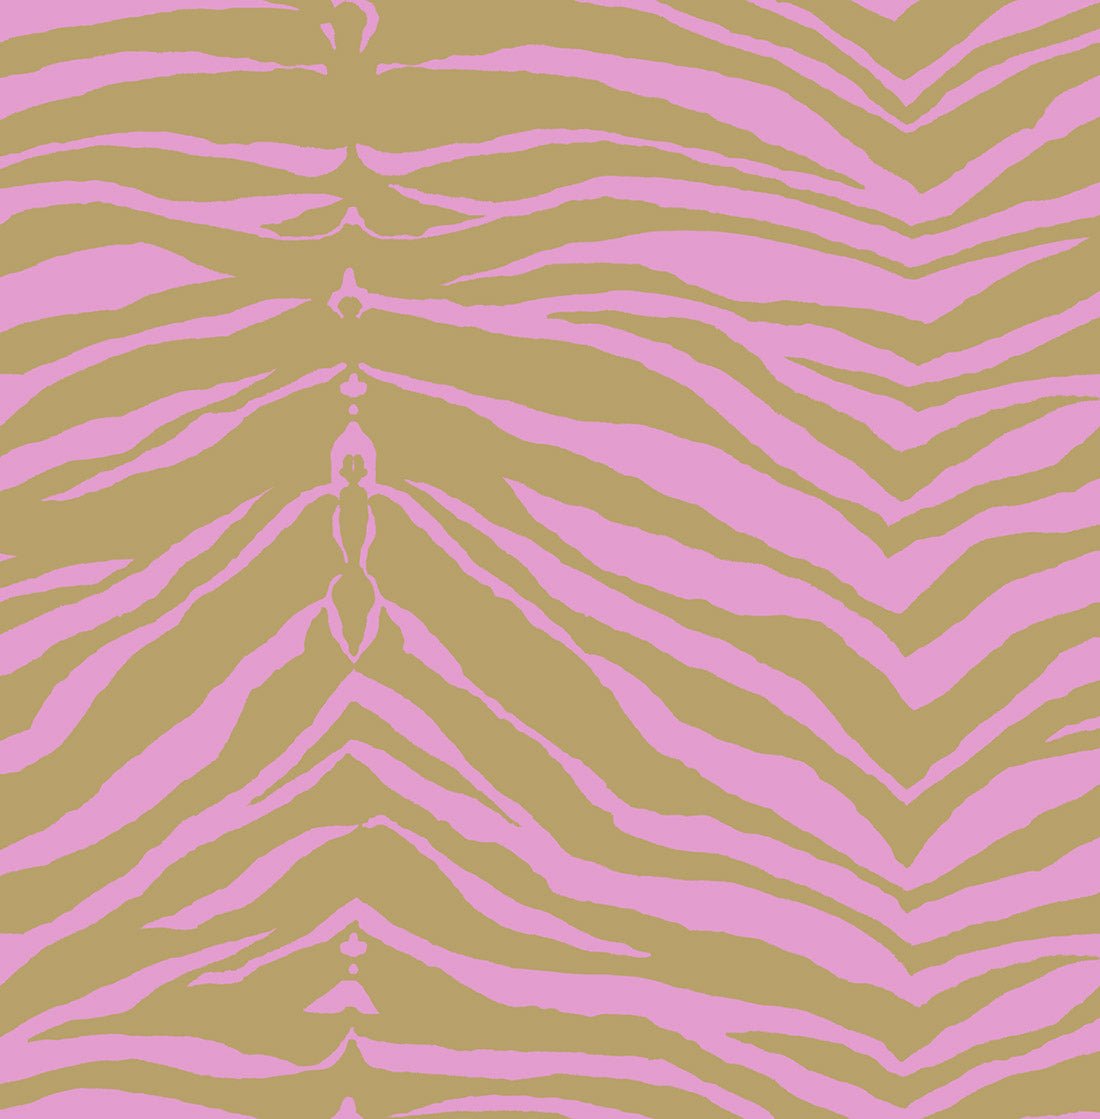 purple zebra print walls